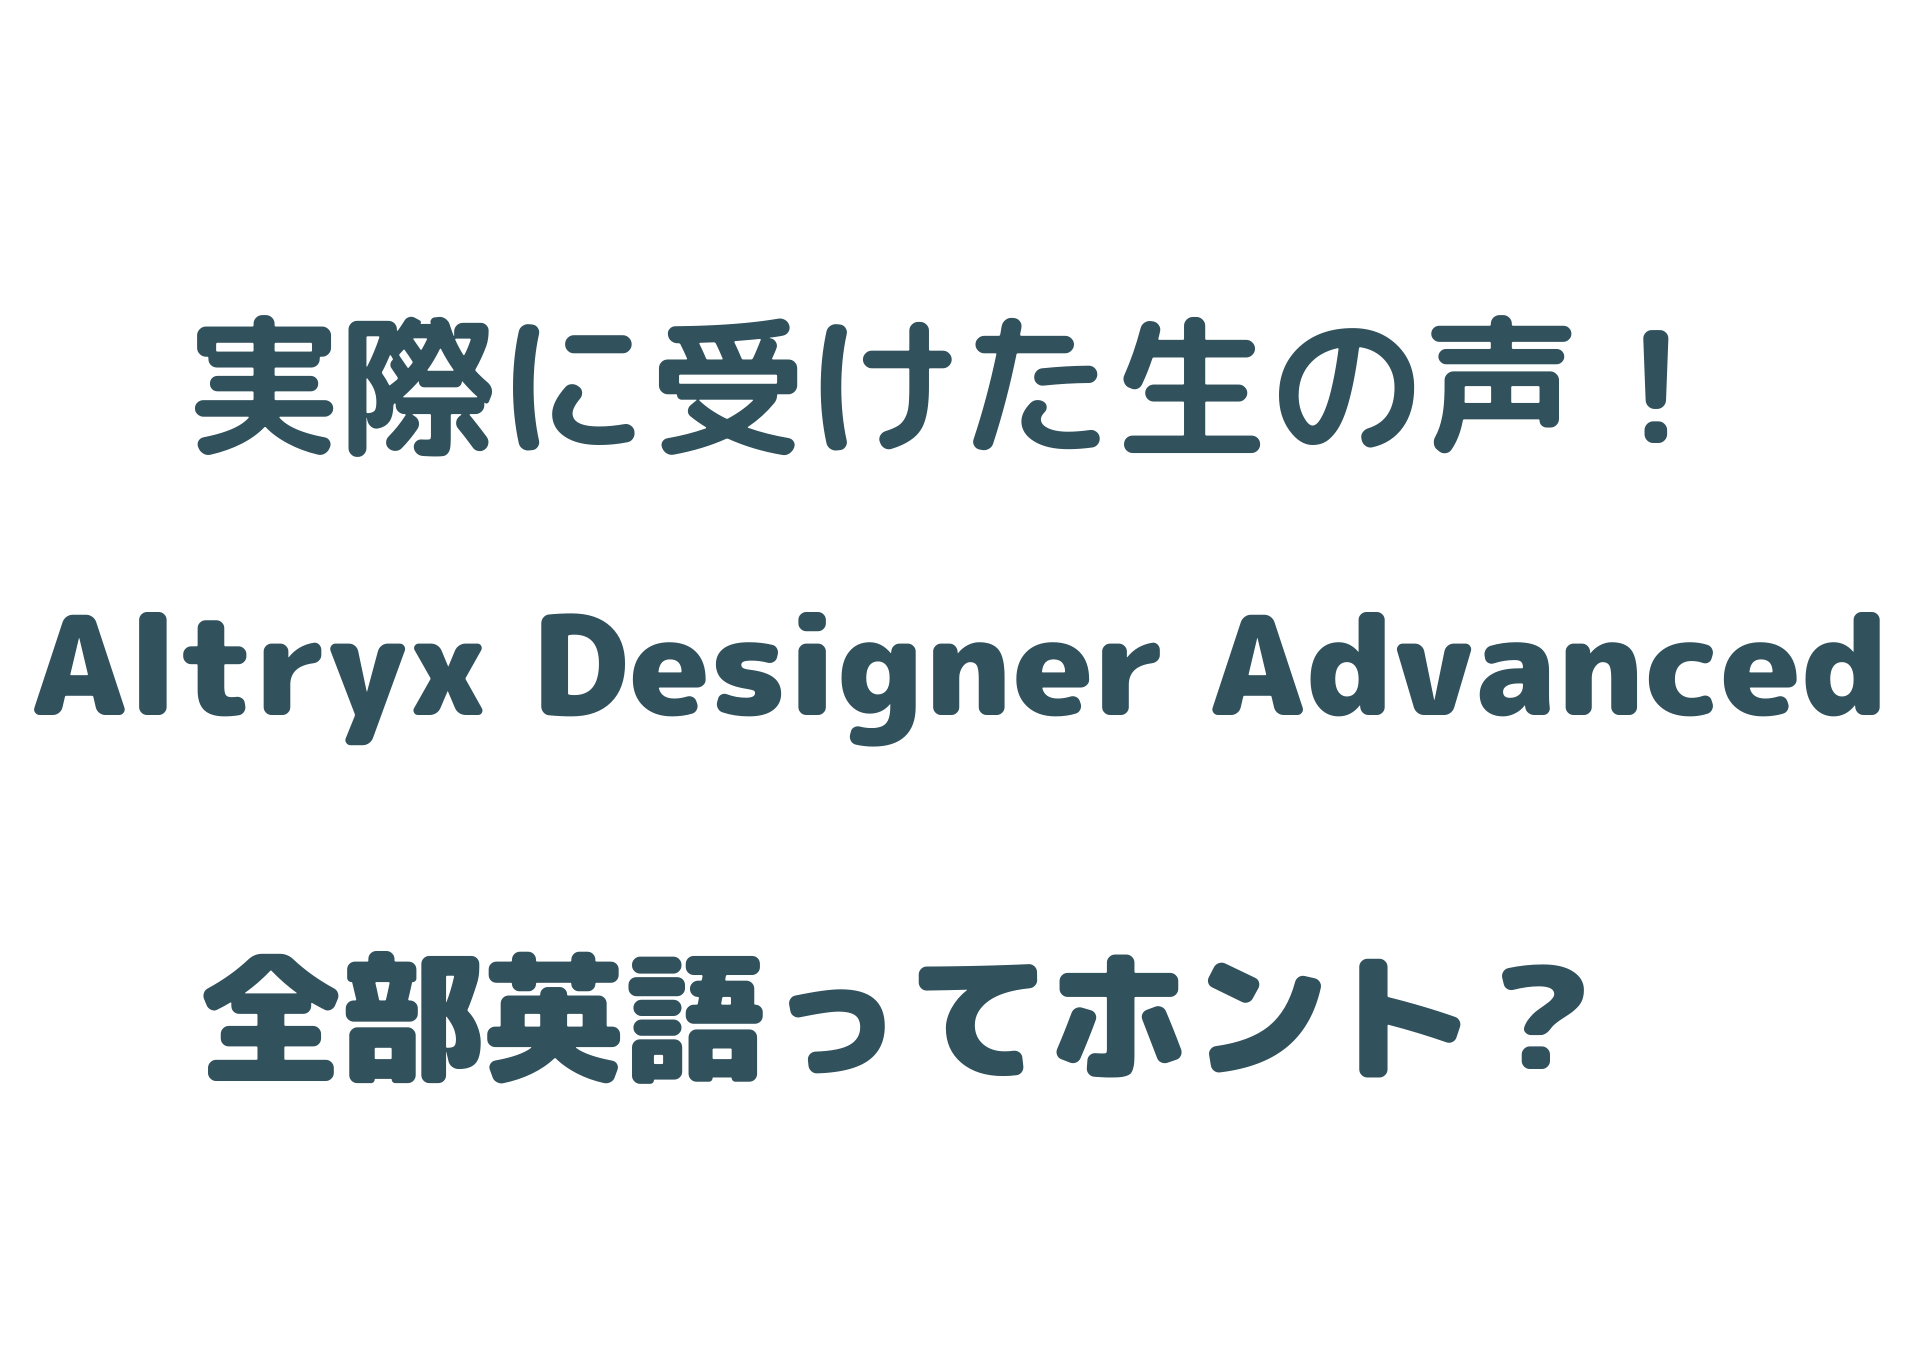 【中級〜上級者向け】Alteryx Designer Advancedを取得するまでの道のり